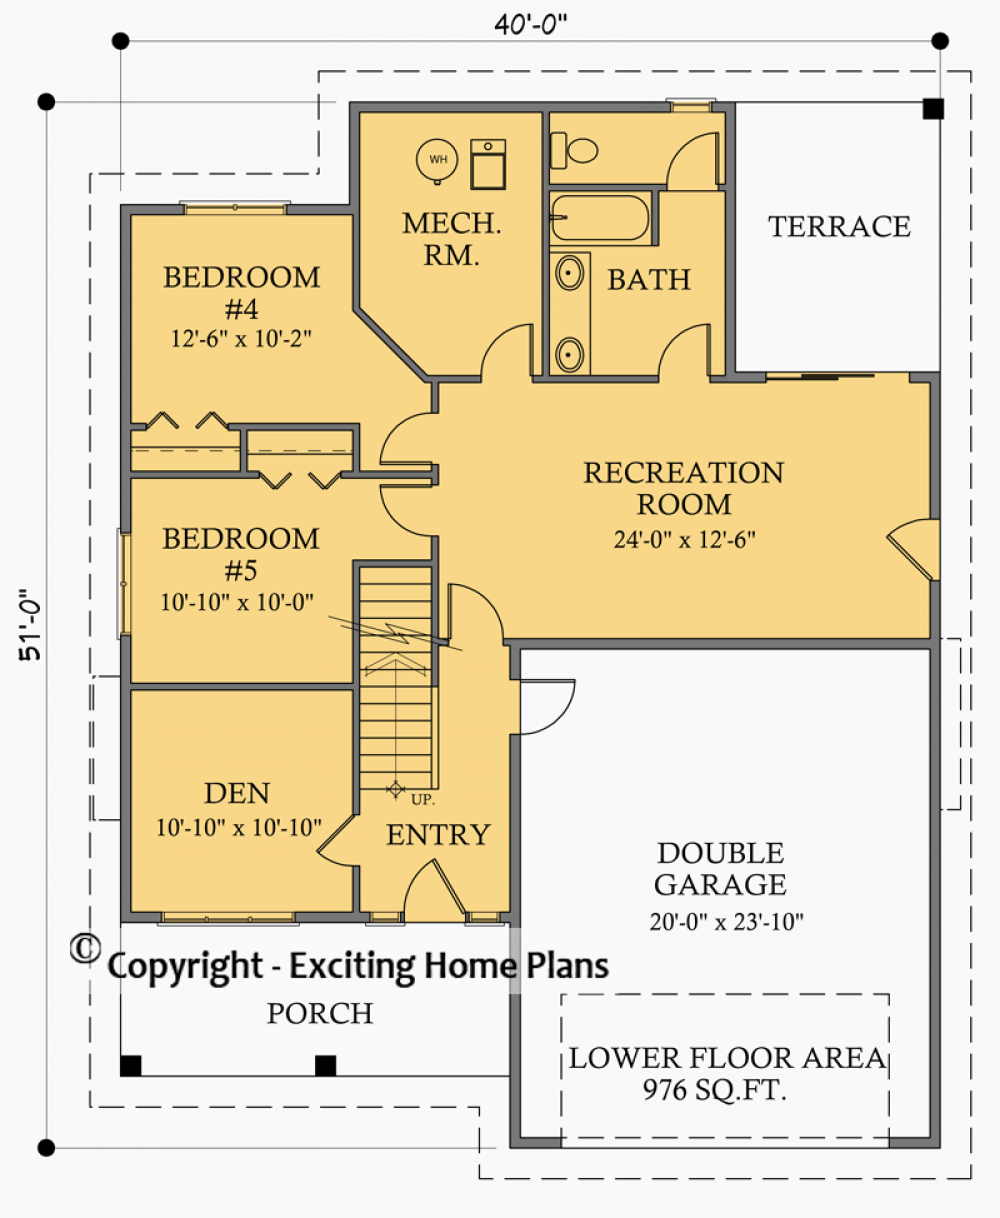 House Plan E1024-10  Lower Floor Plan